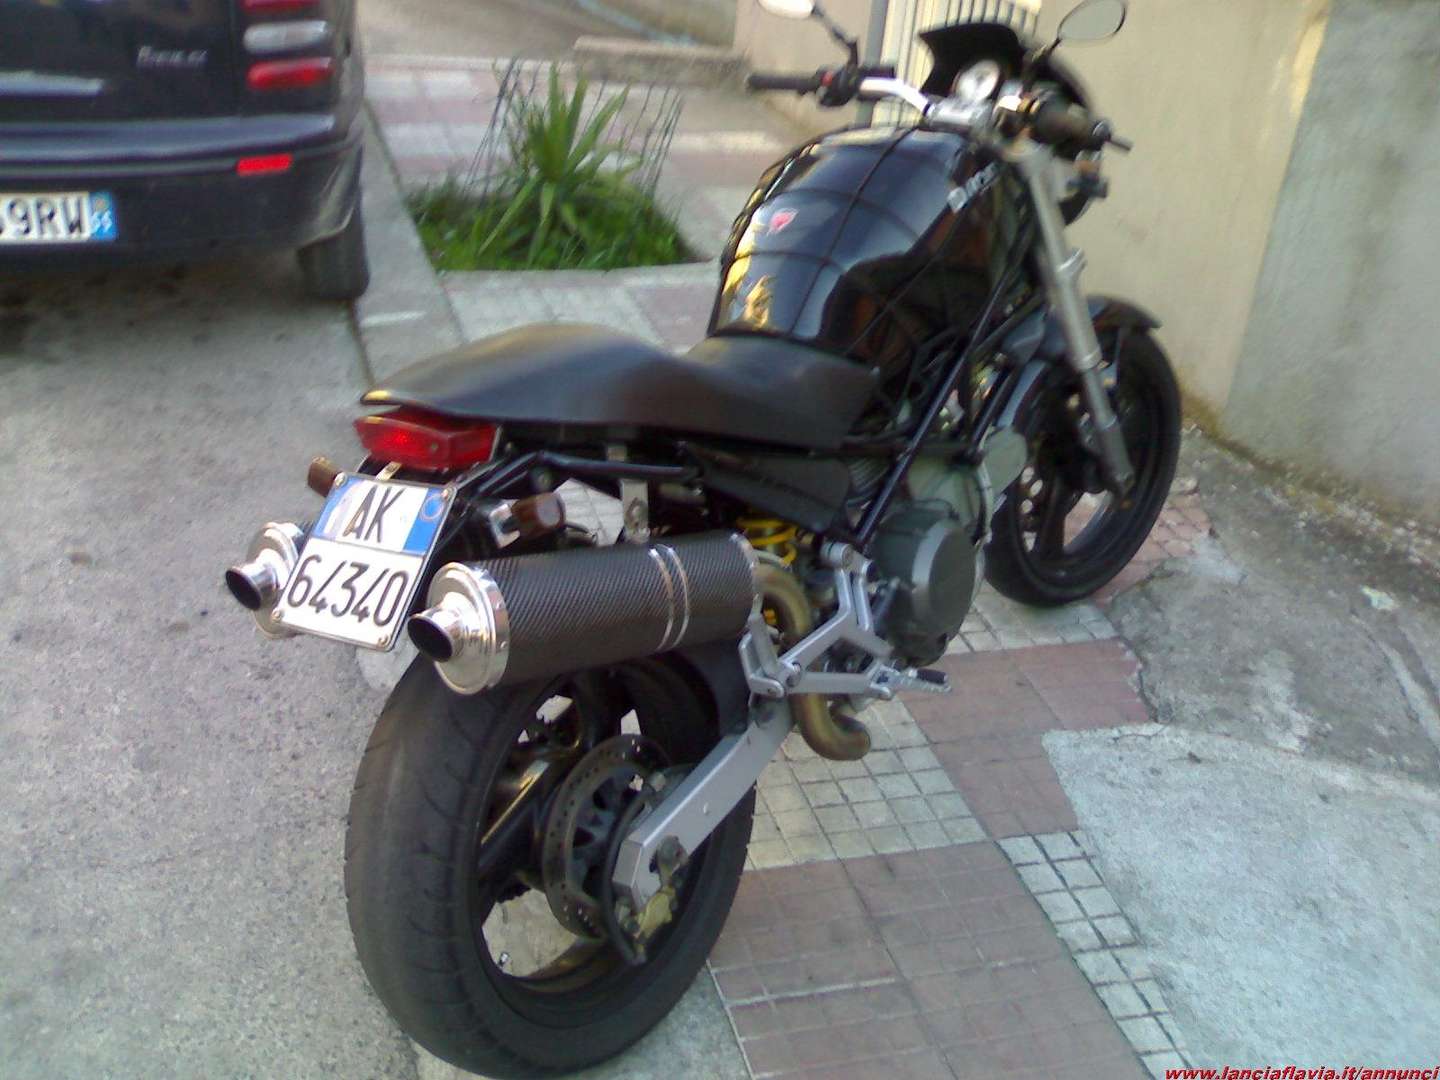 Ducati_Monster_600